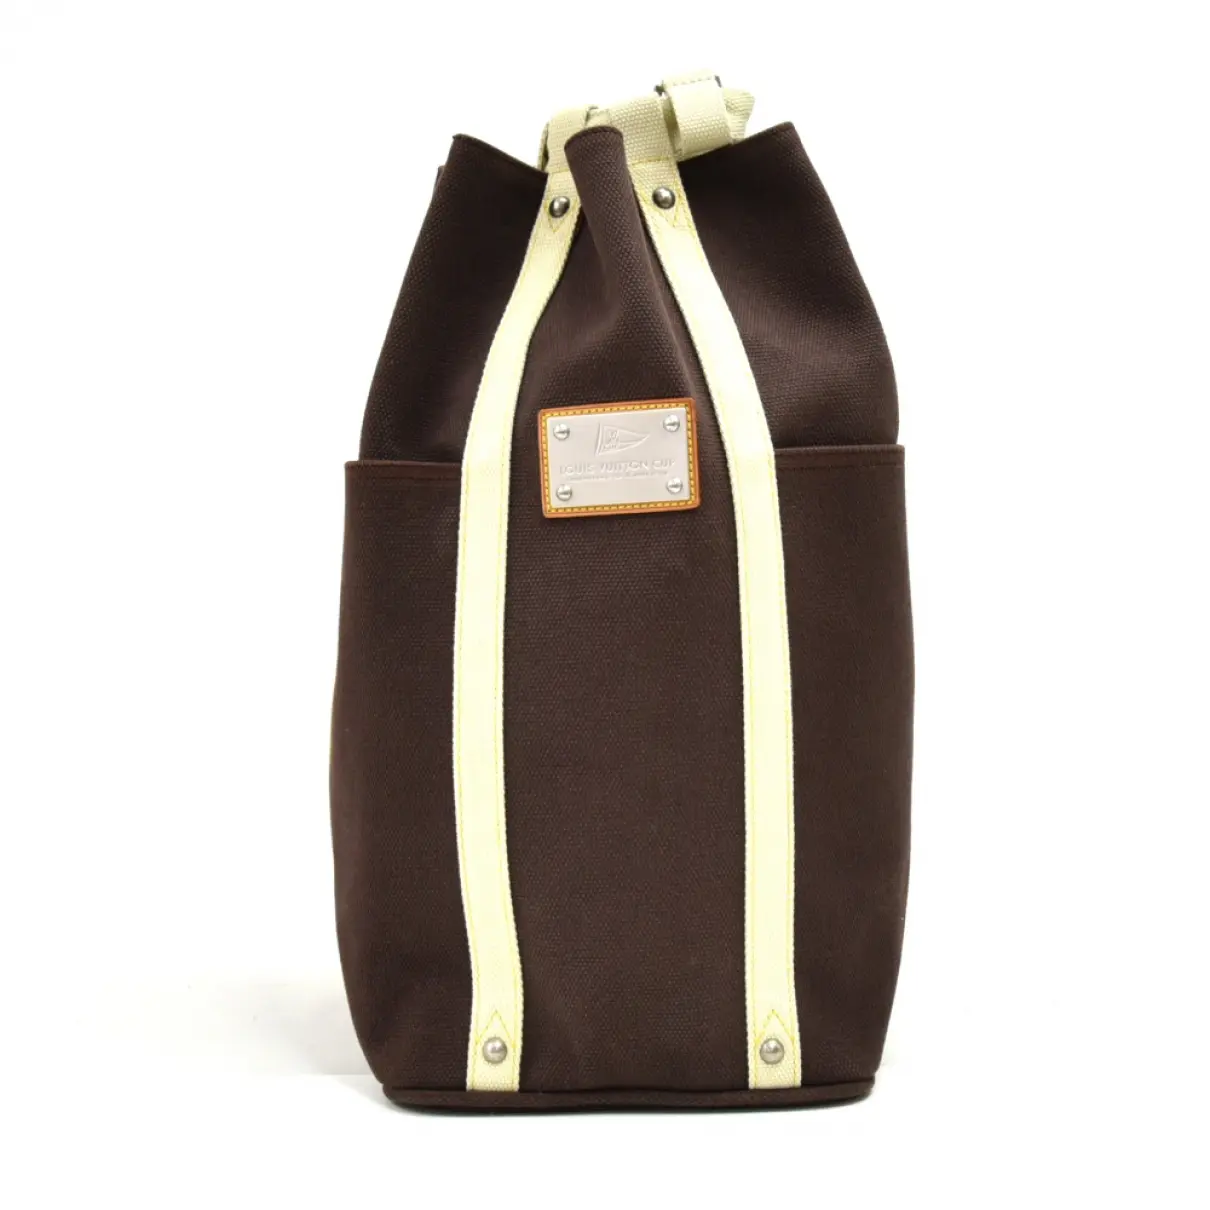 Randonnée cloth travel bag Louis Vuitton - Vintage